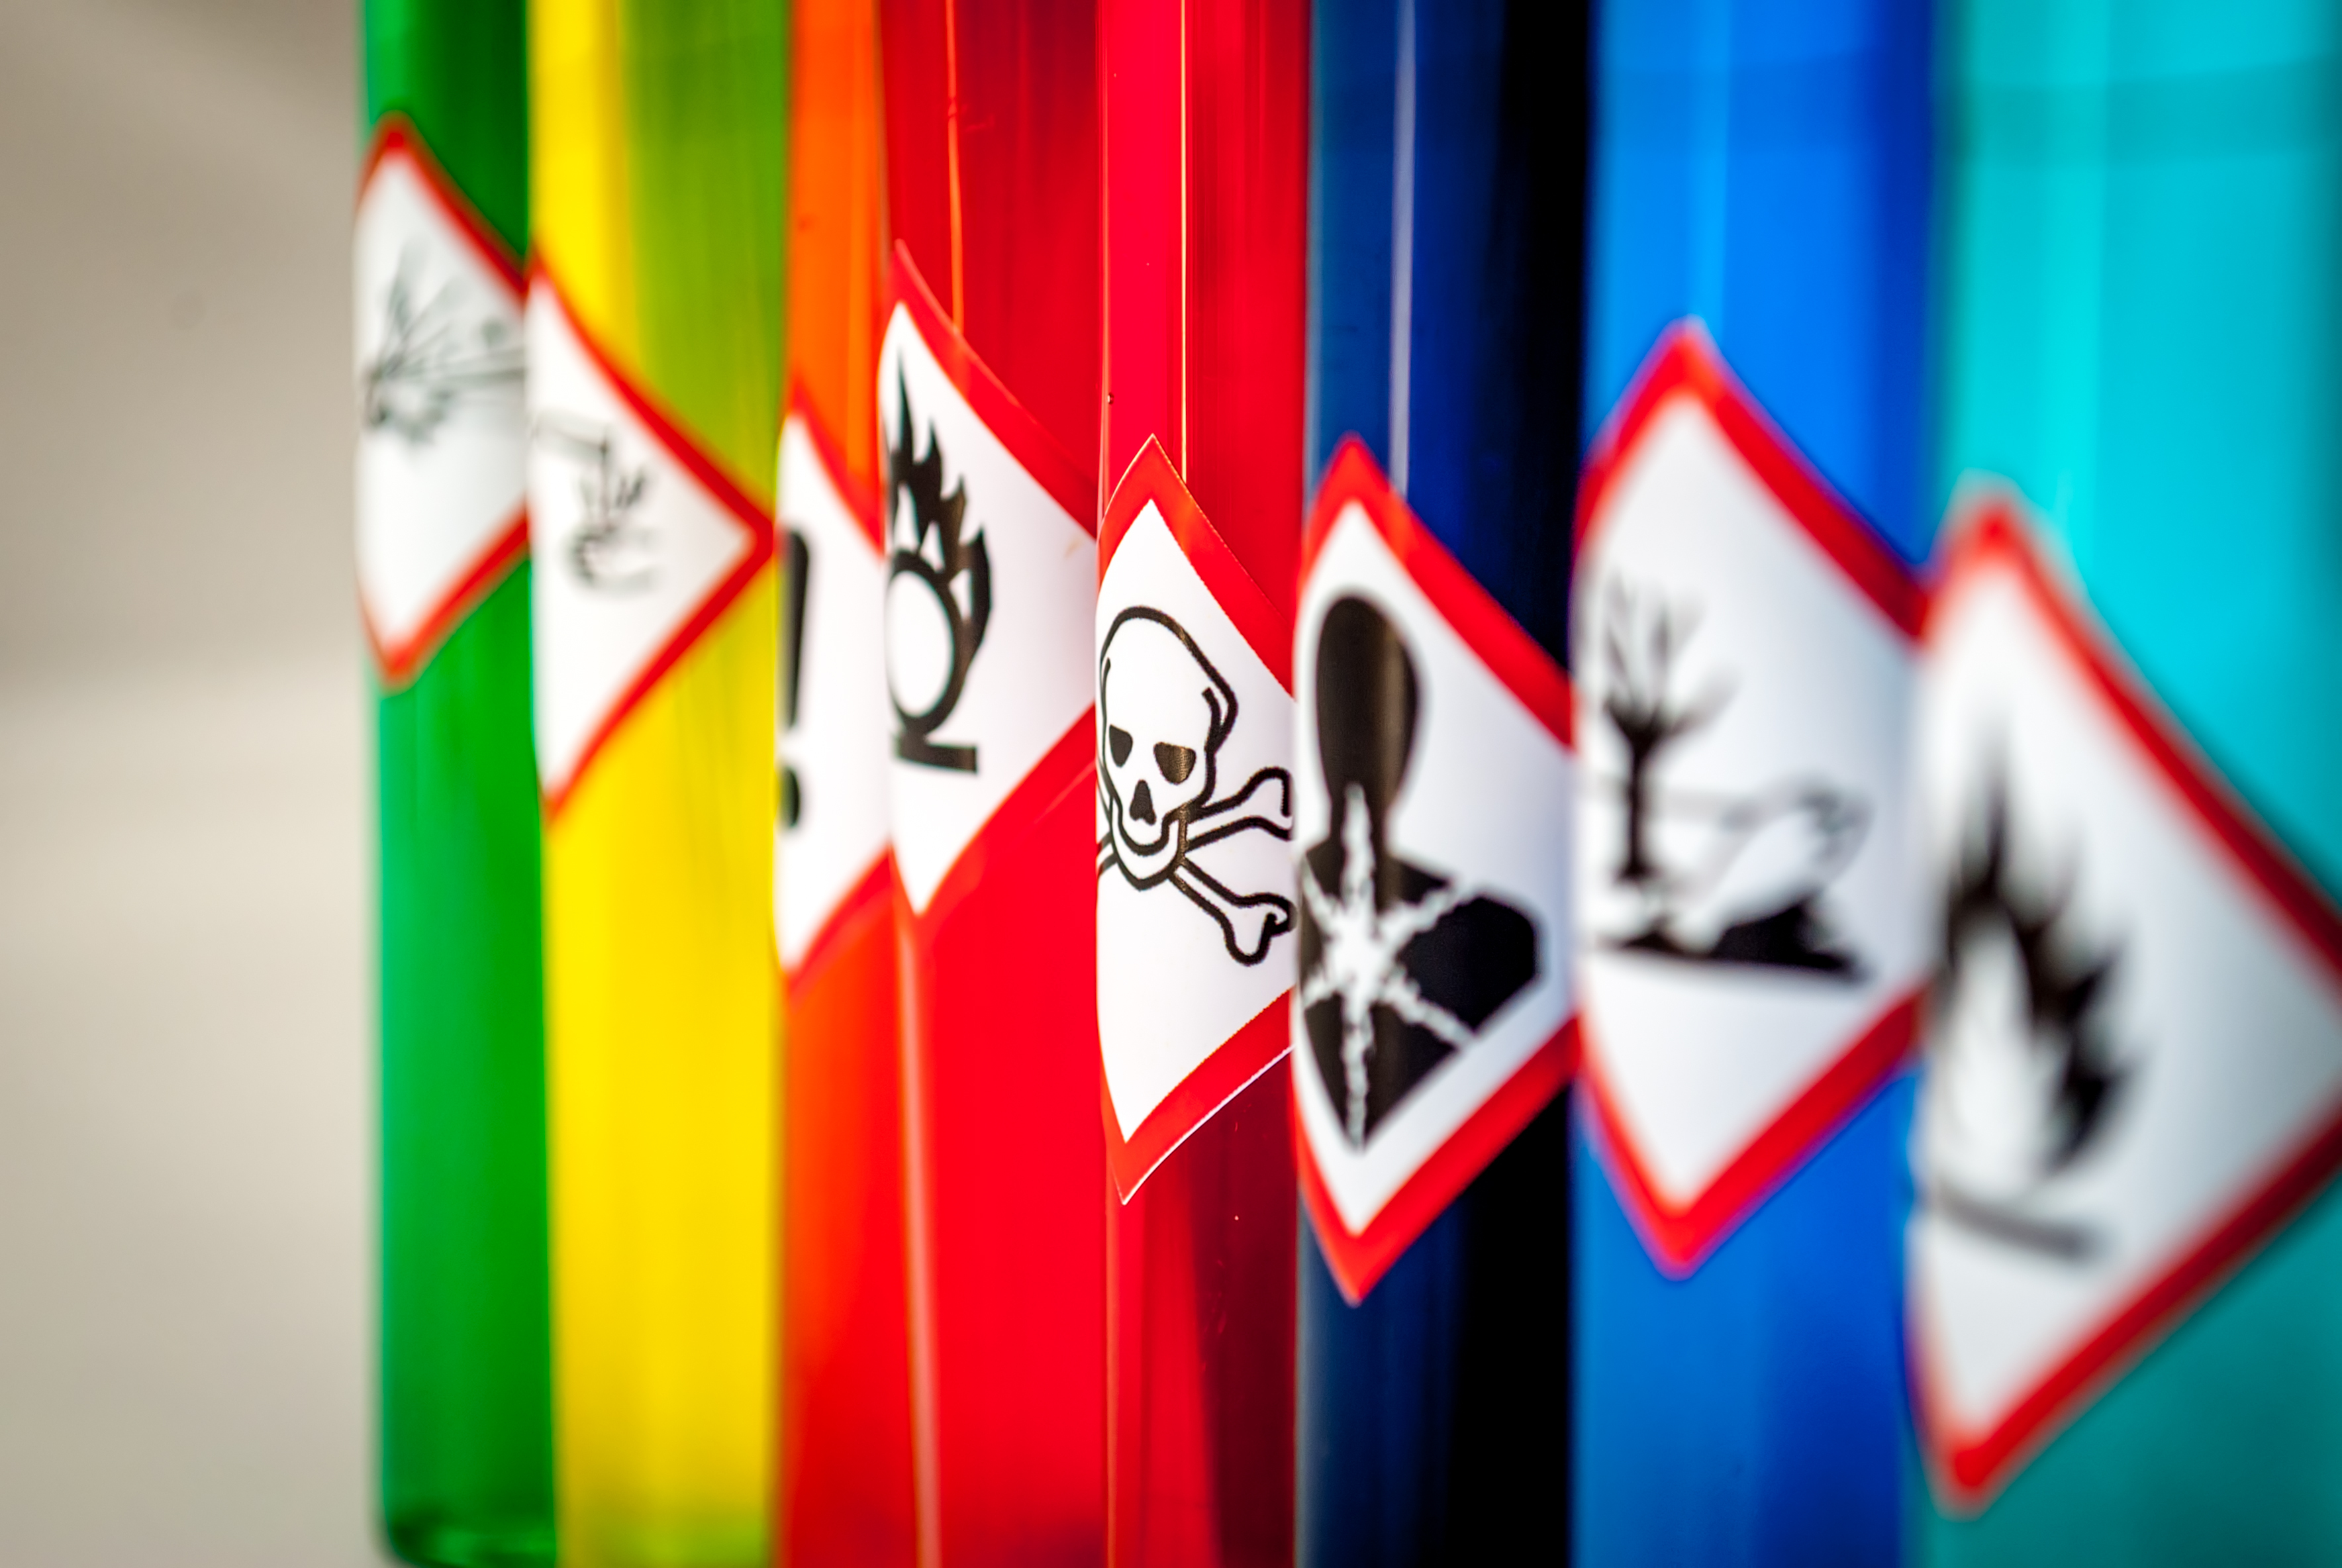 Dangerous Goods classification labels